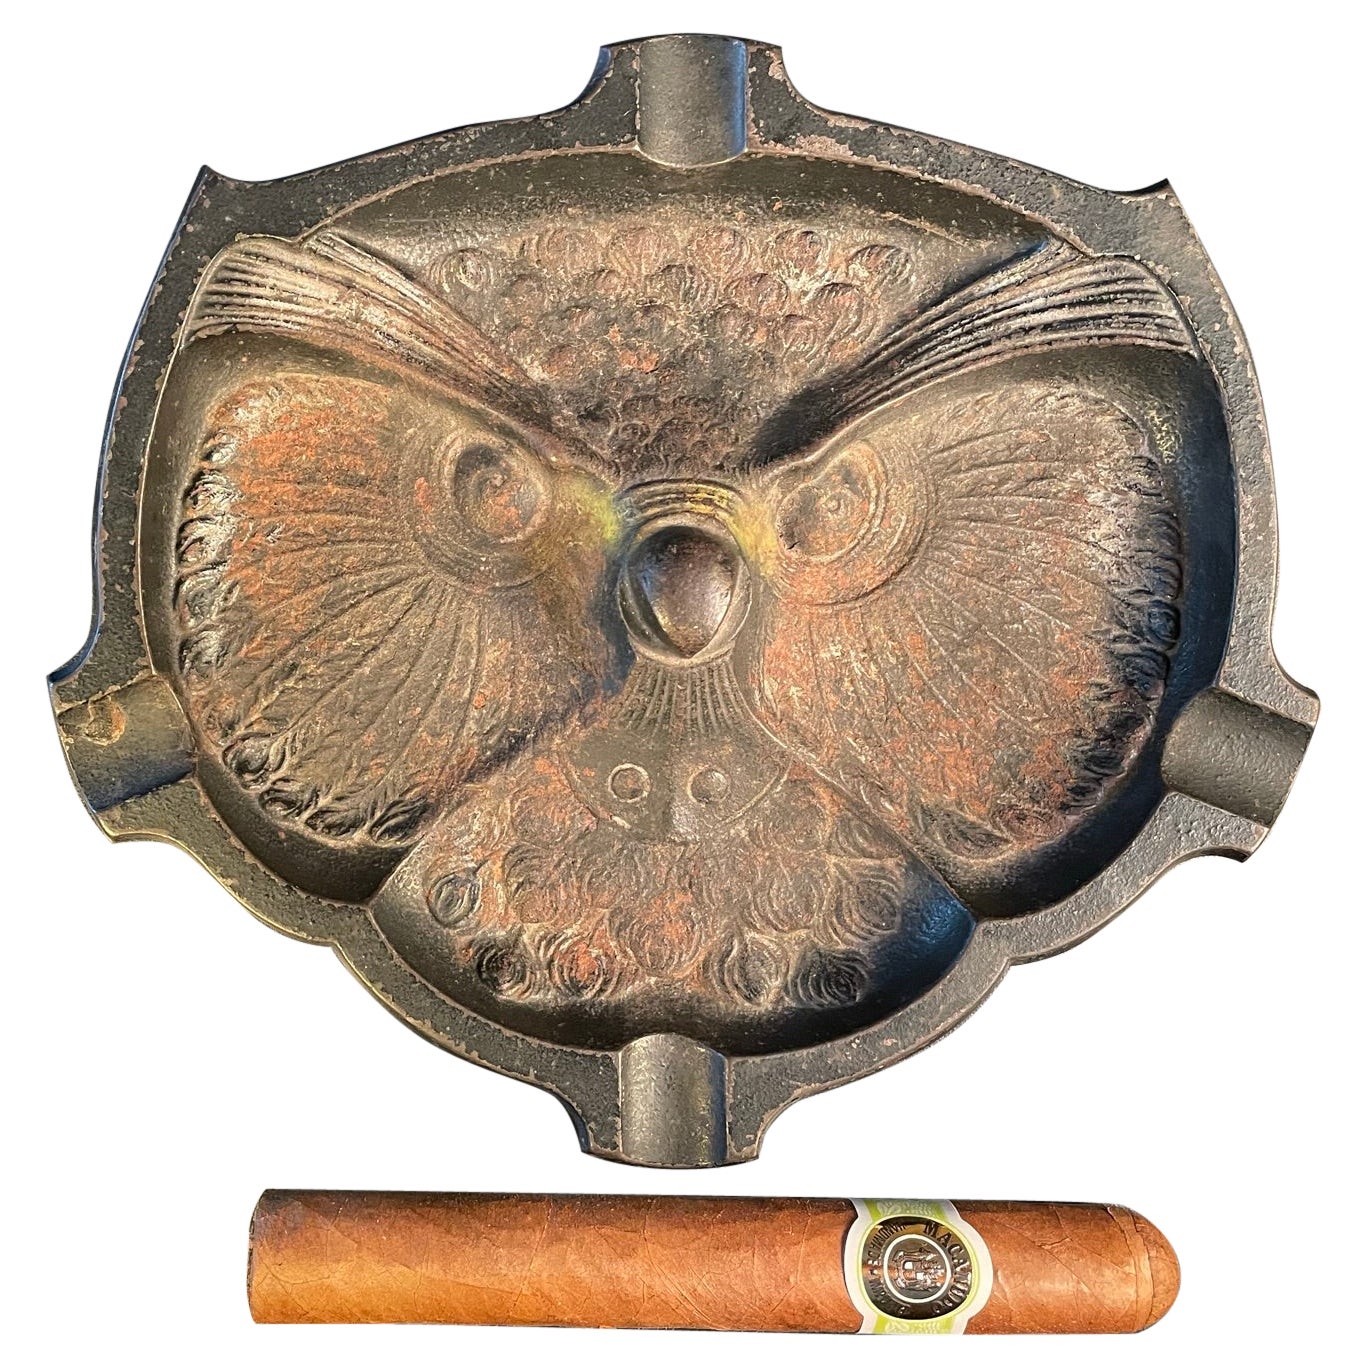 Japanisches einzigartiges Zigarren-Stogie-Tablett mit altem Eulen Gesicht